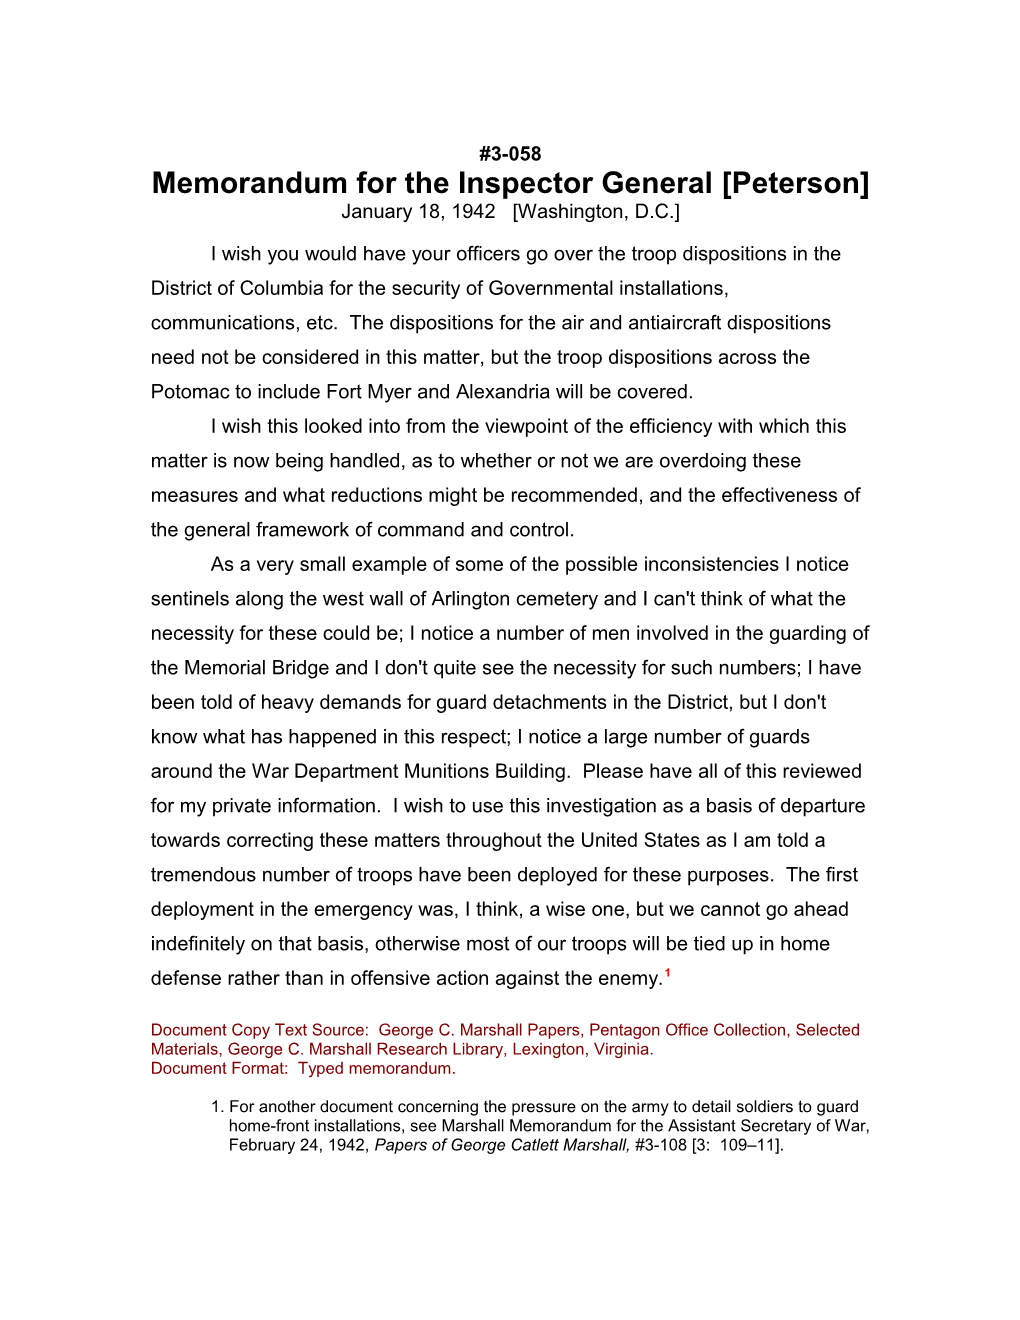 Memorandum for the Inspector General Peterson